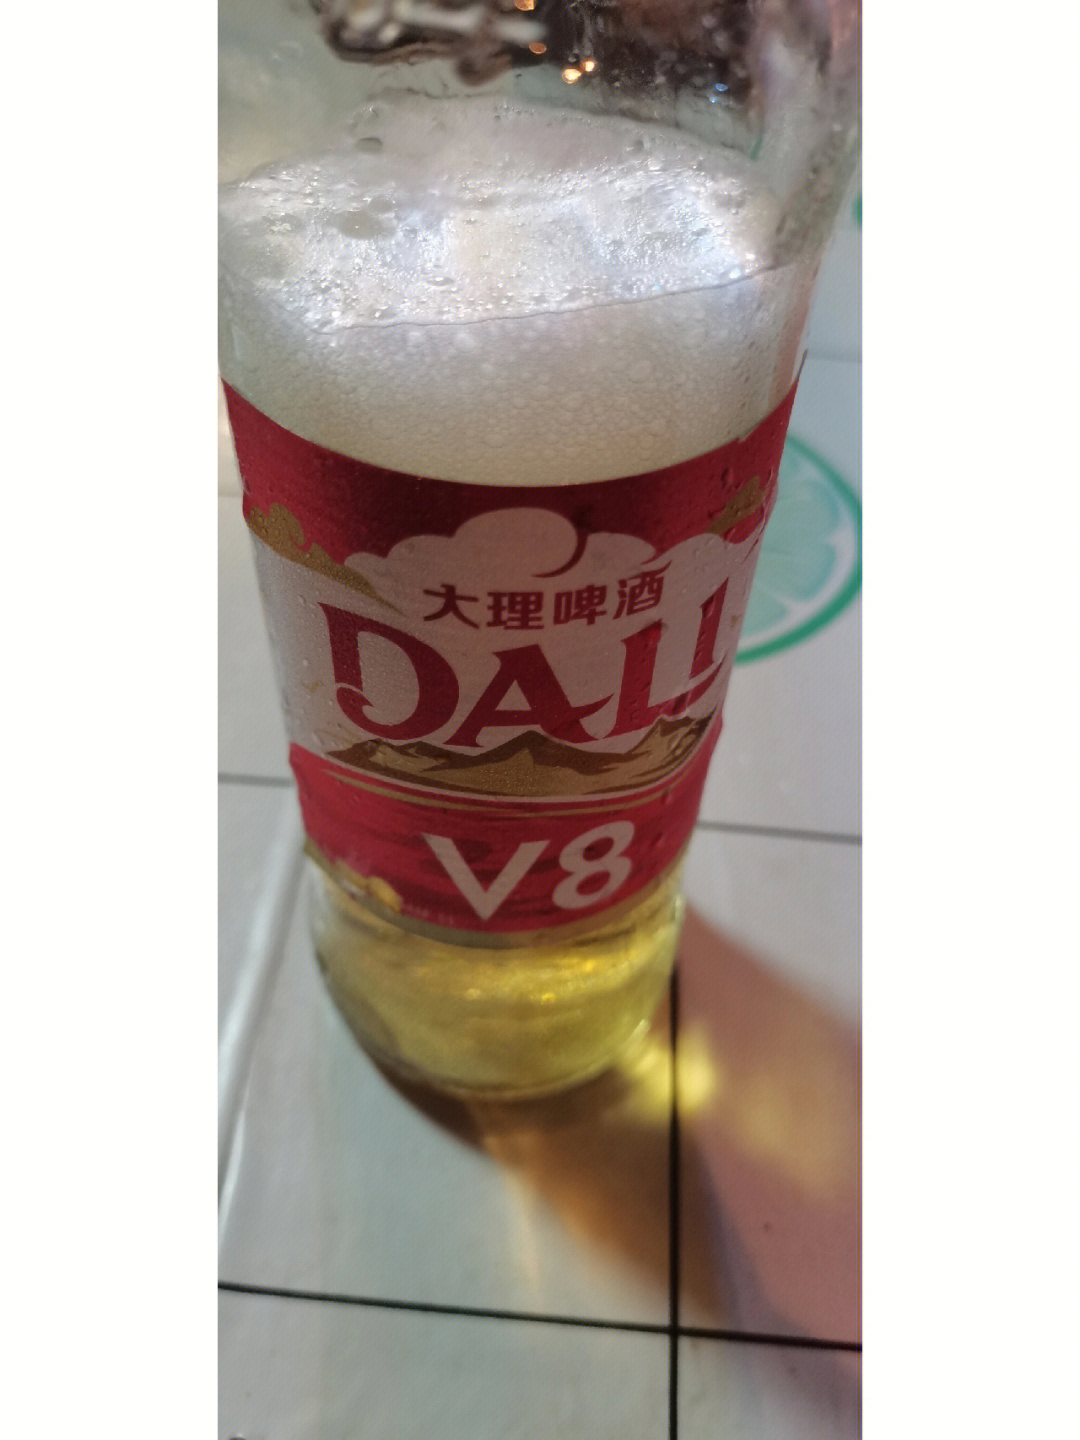 大理啤酒v8酒精度图片